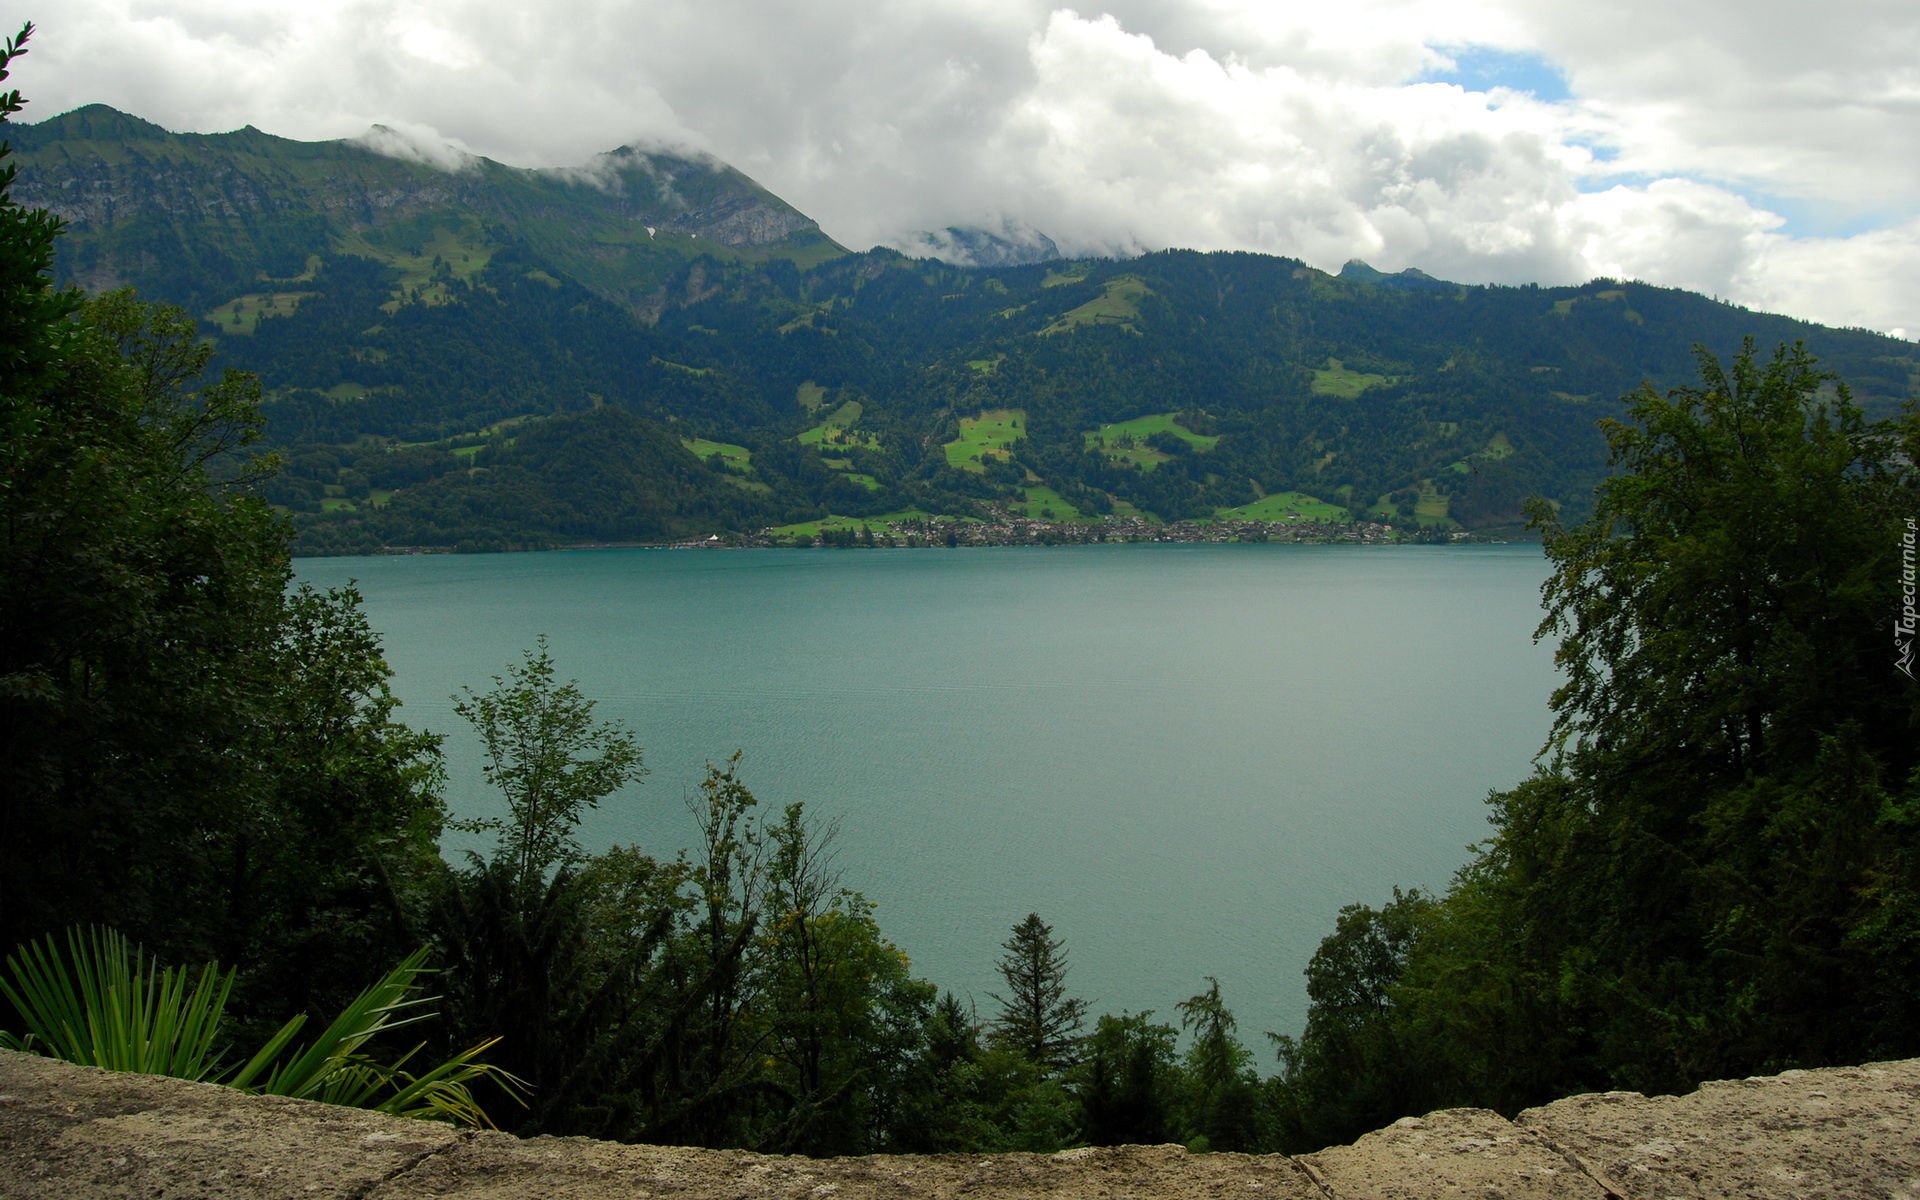 Góry, Alpy Berneńskie, Jezioro Thunersee, Drzewa, Kanton Berno, Szwajcaria